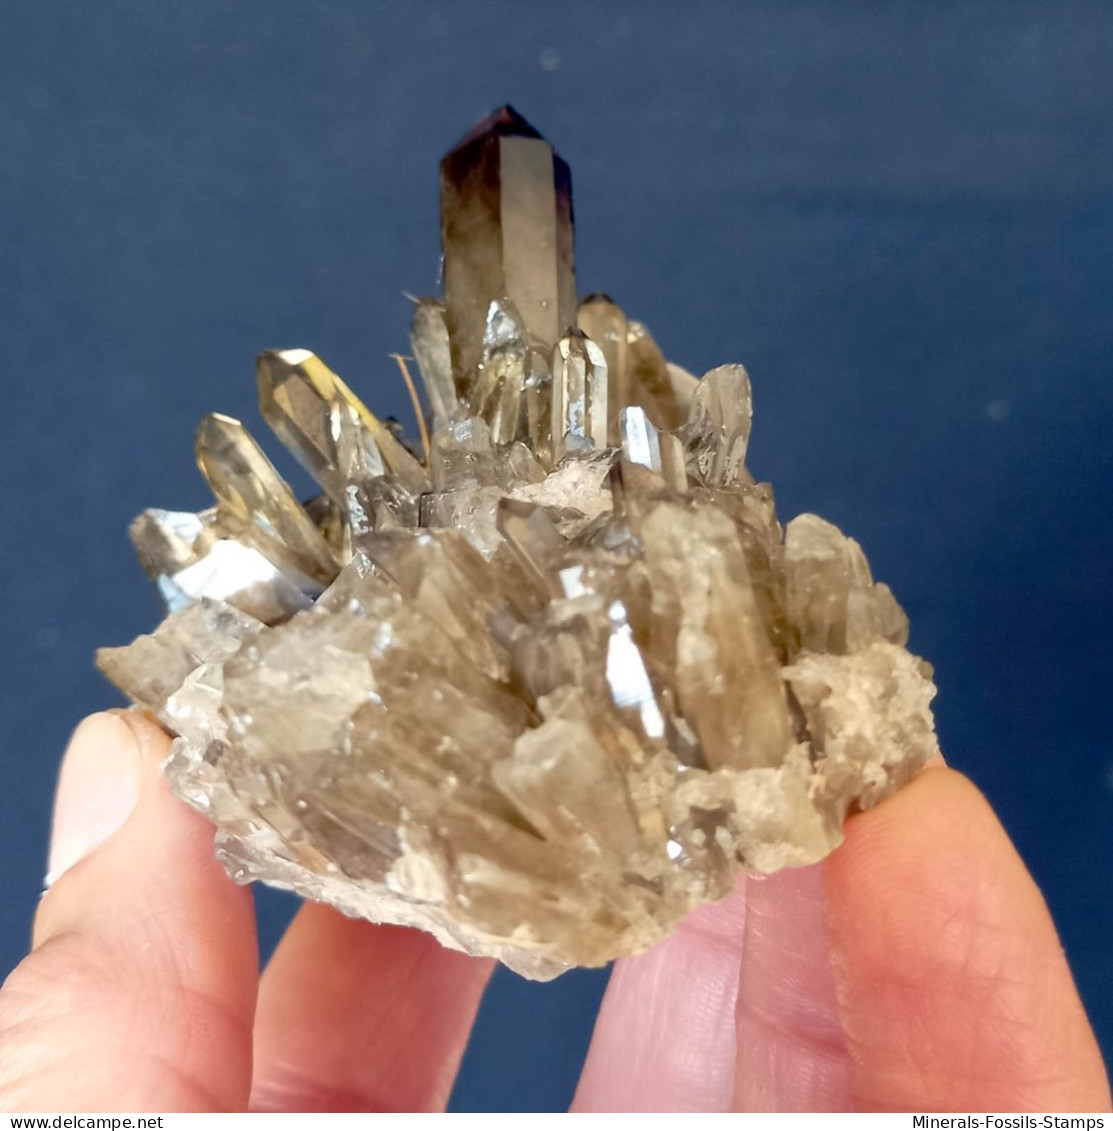 #07 – SCHÖNE MORIONE QUARZ Kristalle (Kara-Oba, Moiynkum, Jambyl, Kasachstan) - Minerales